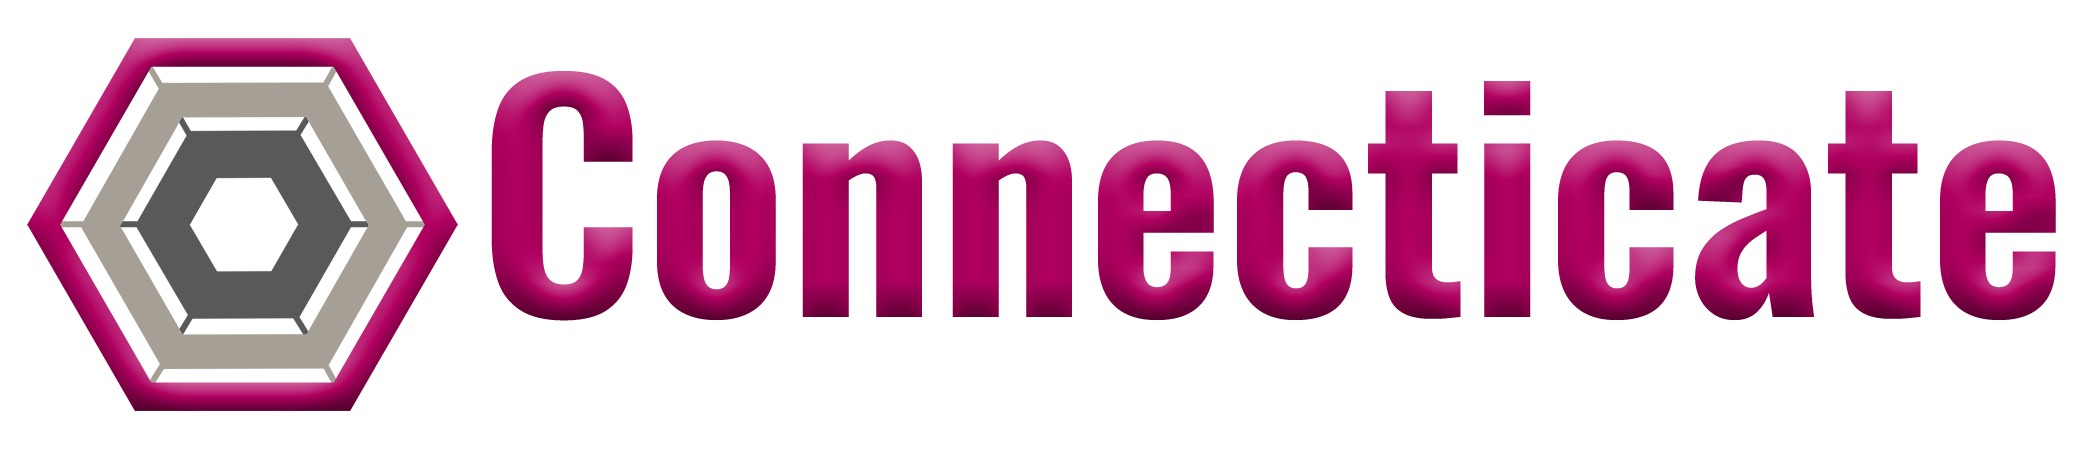 Connecticate Logo